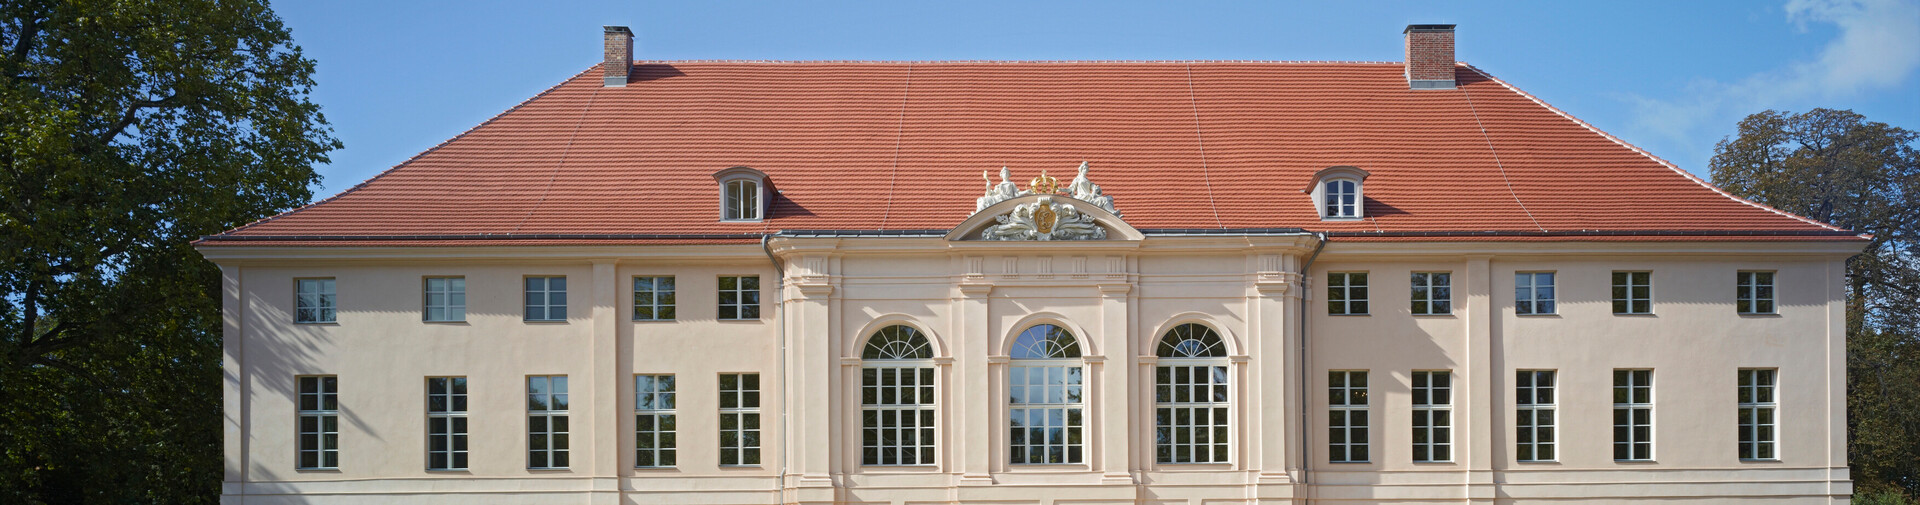 Schloss Schönhausen als Projekt der Cornelsen Kulturstiftung